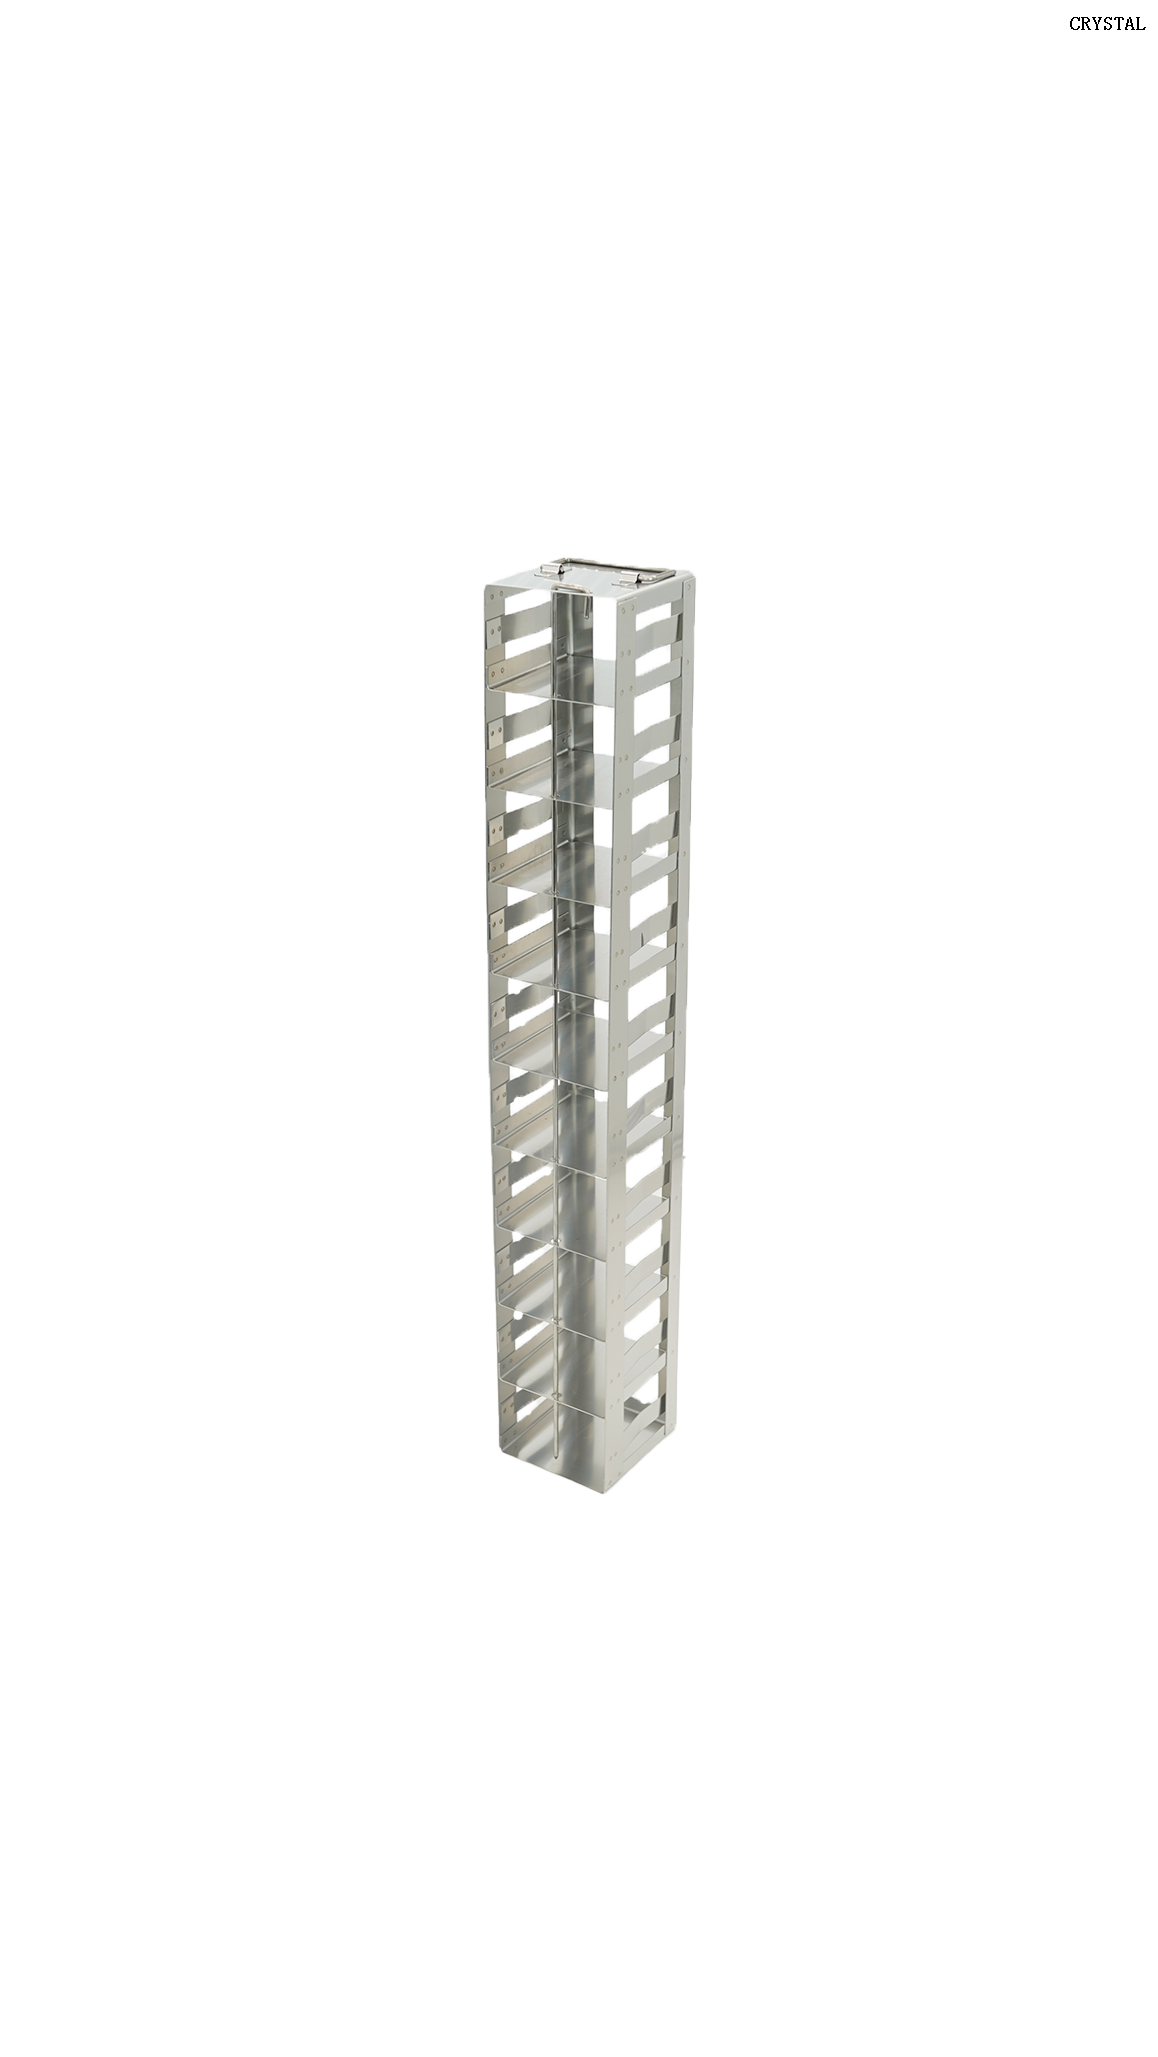 Vertical rack for mini 3" cryo box